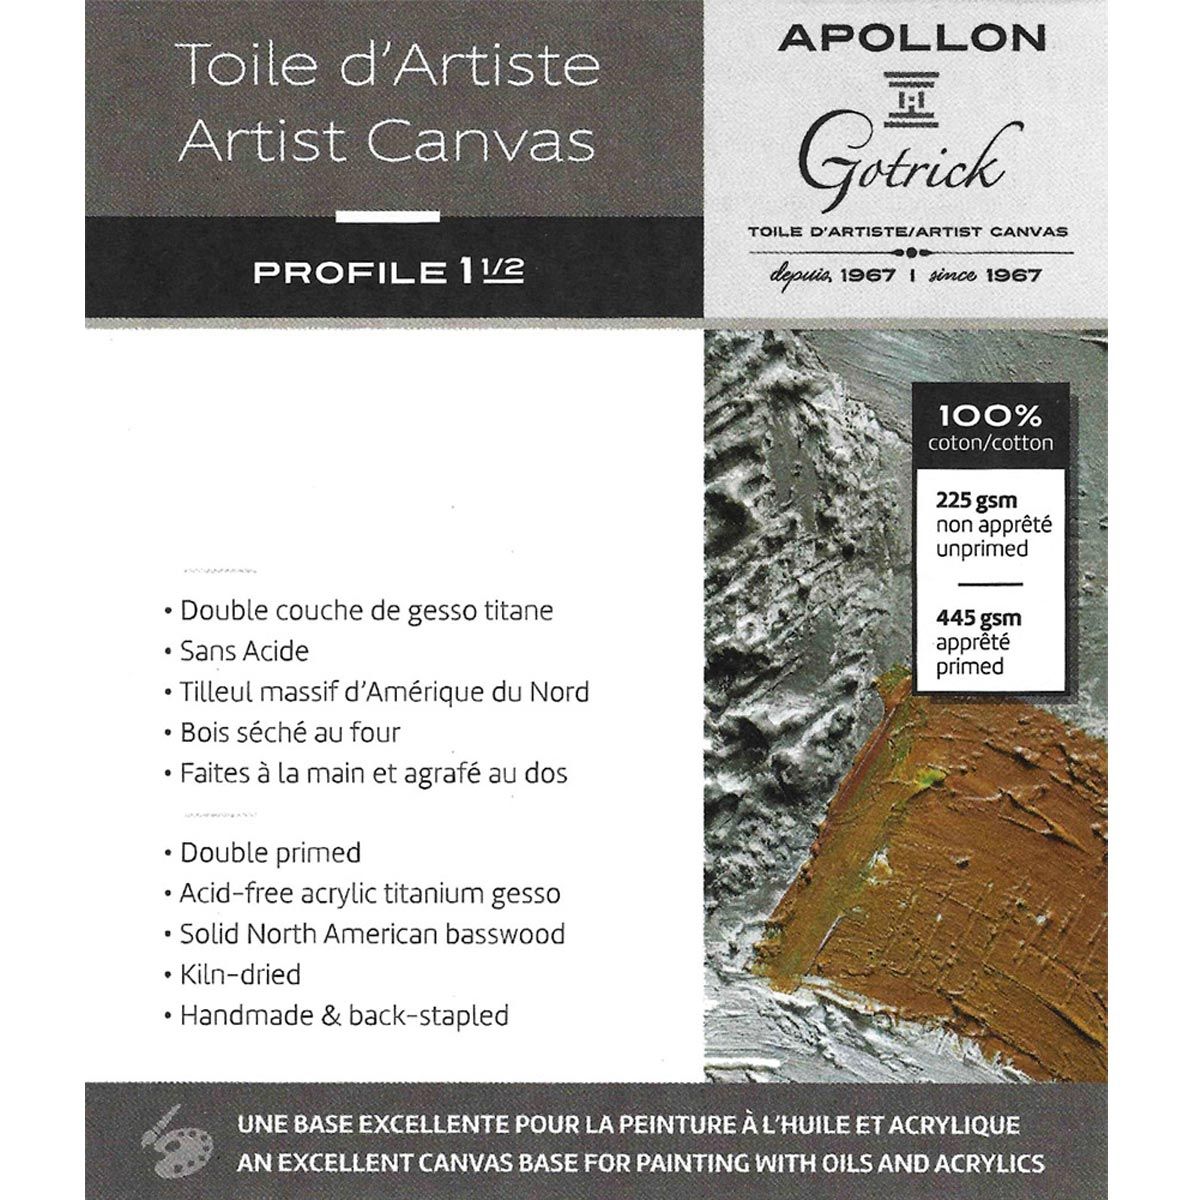 Apollon Gotrick Gallery Artist Canvas Profile 1½" - 18" x 24"